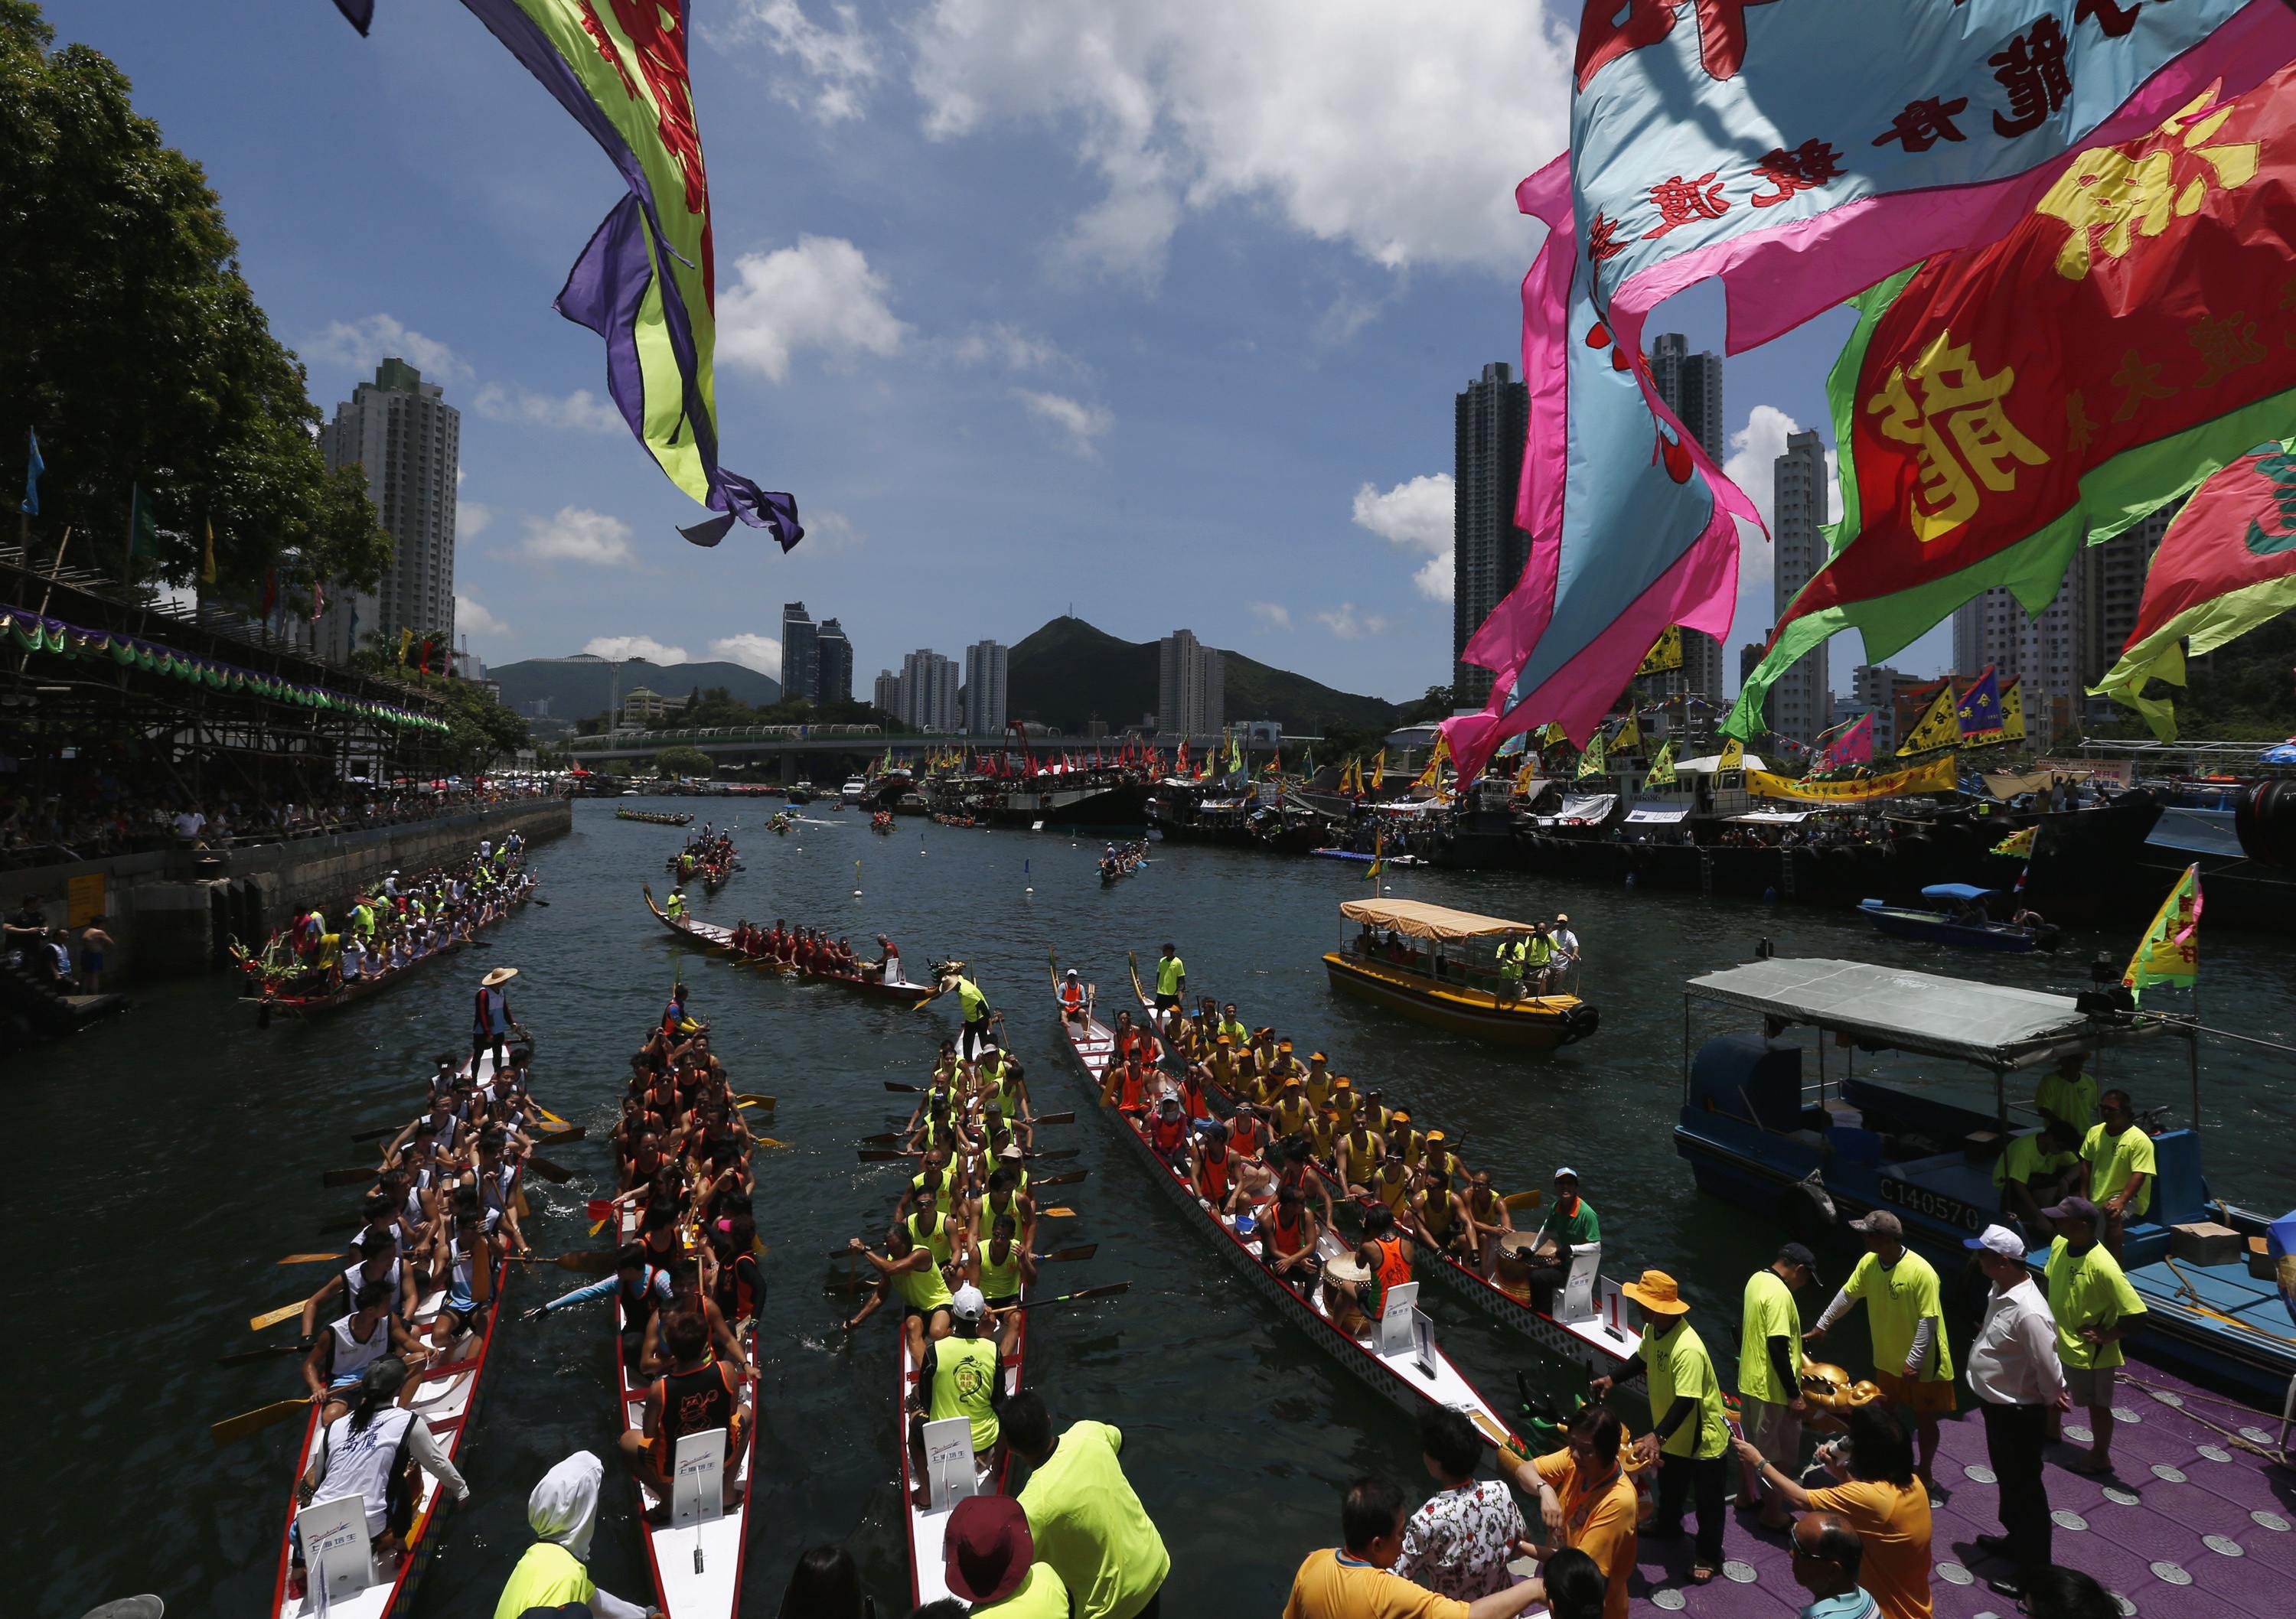 festival perahu naga tahunan atau tuen ng di aberdeen